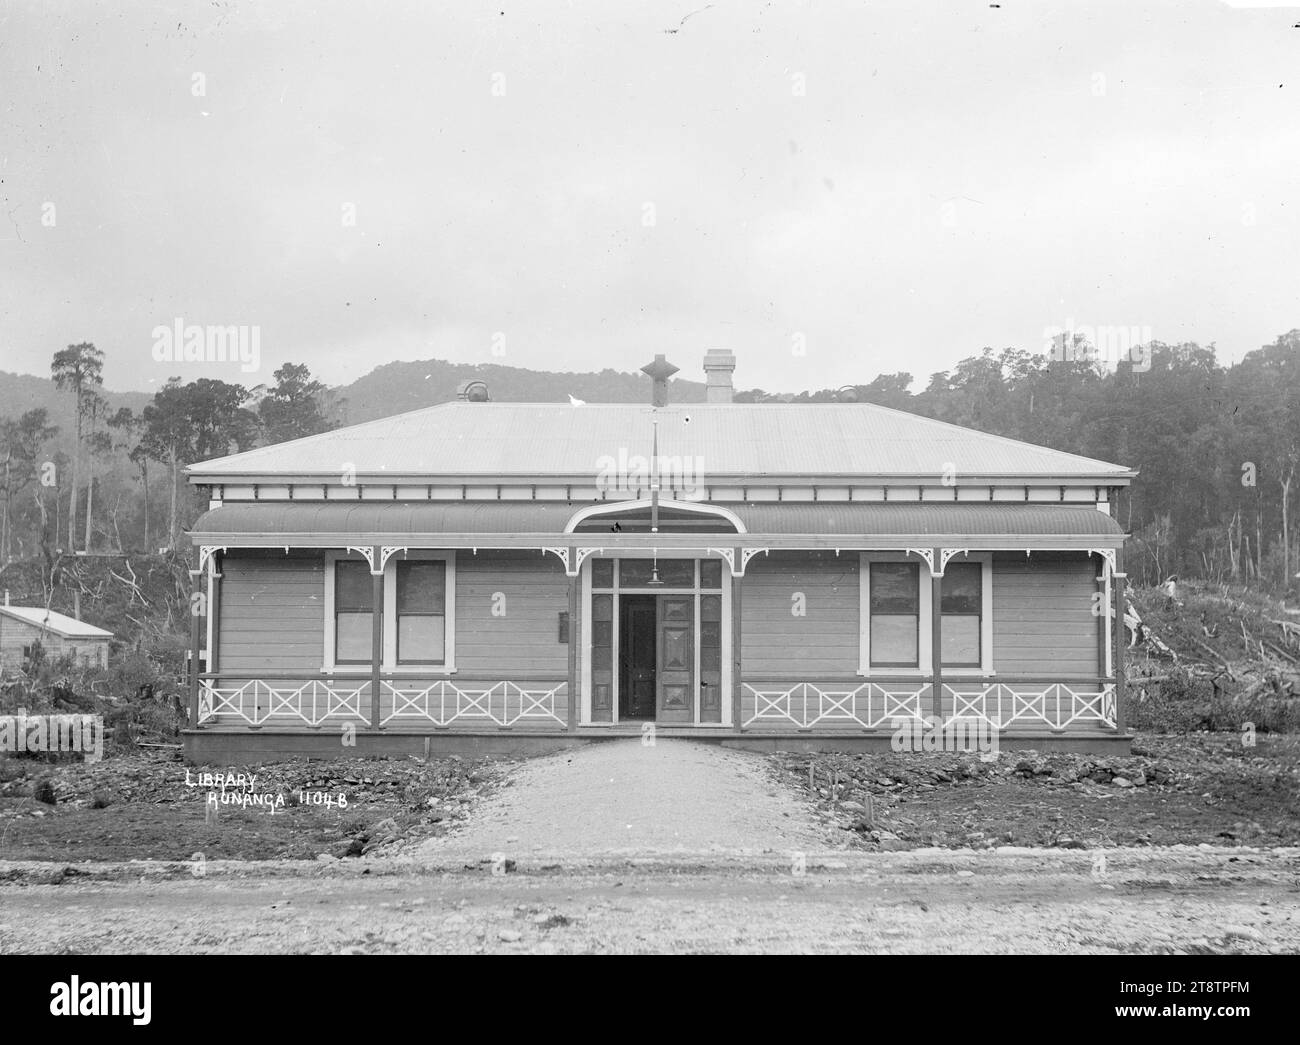 Bibliothèque à Runanga, vue de face de la bibliothèque Seddon Memorial à Runanga. Un bâtiment en bois dans le style d'une grande maison à un étage avec une véranda. P entre 1905 et 1912 Banque D'Images